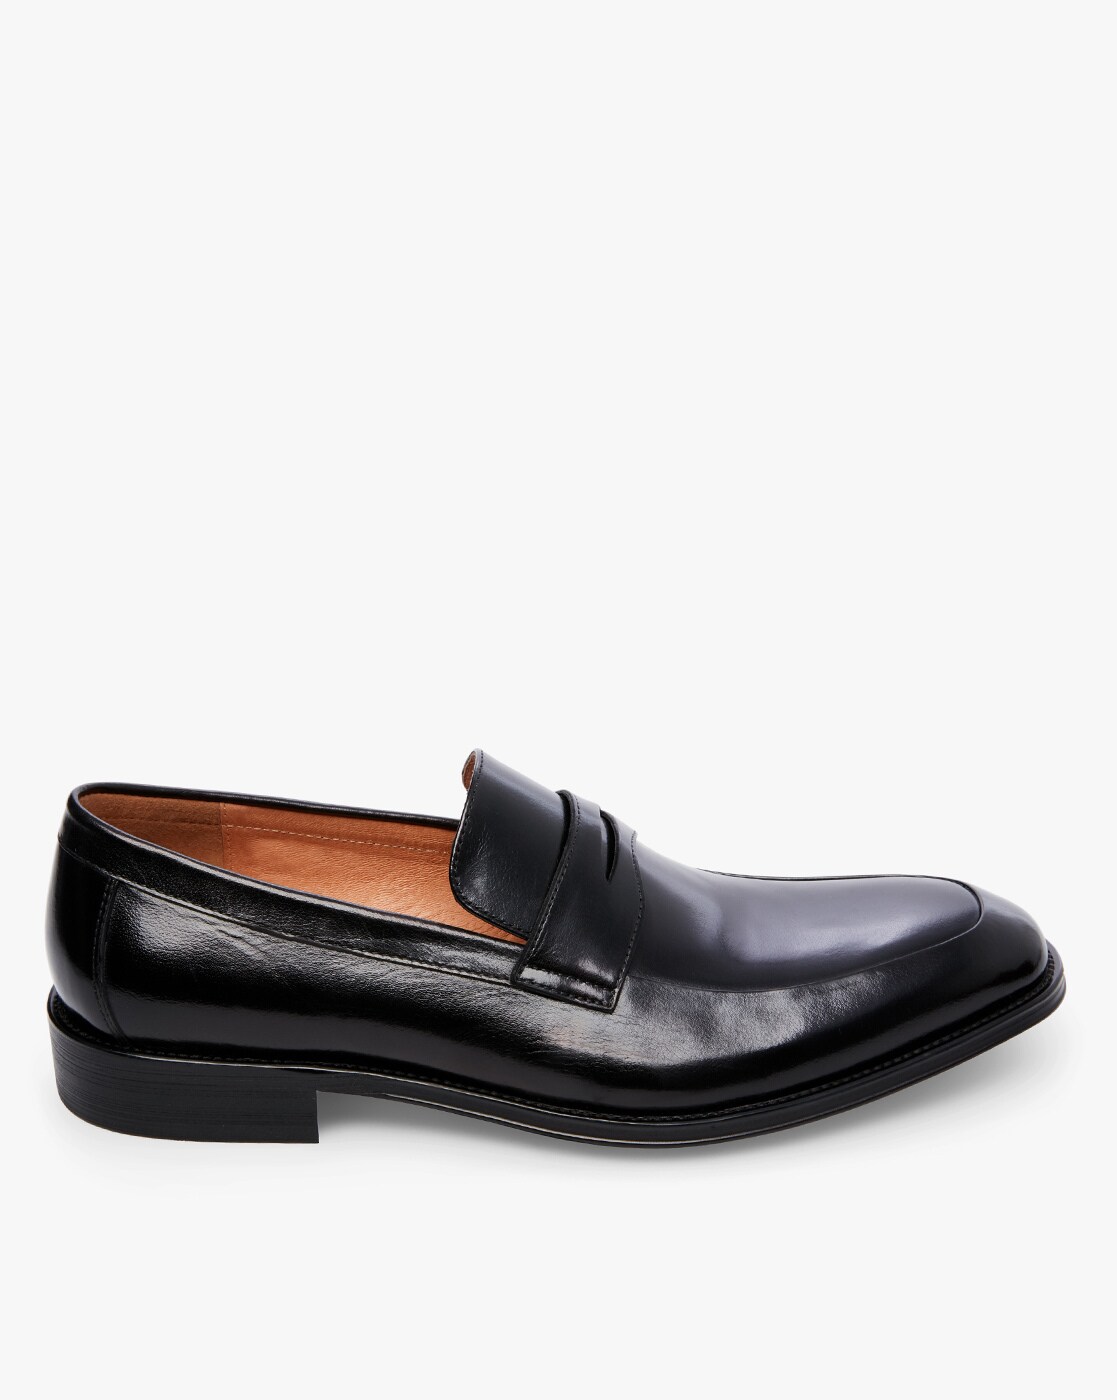 black formal loafers